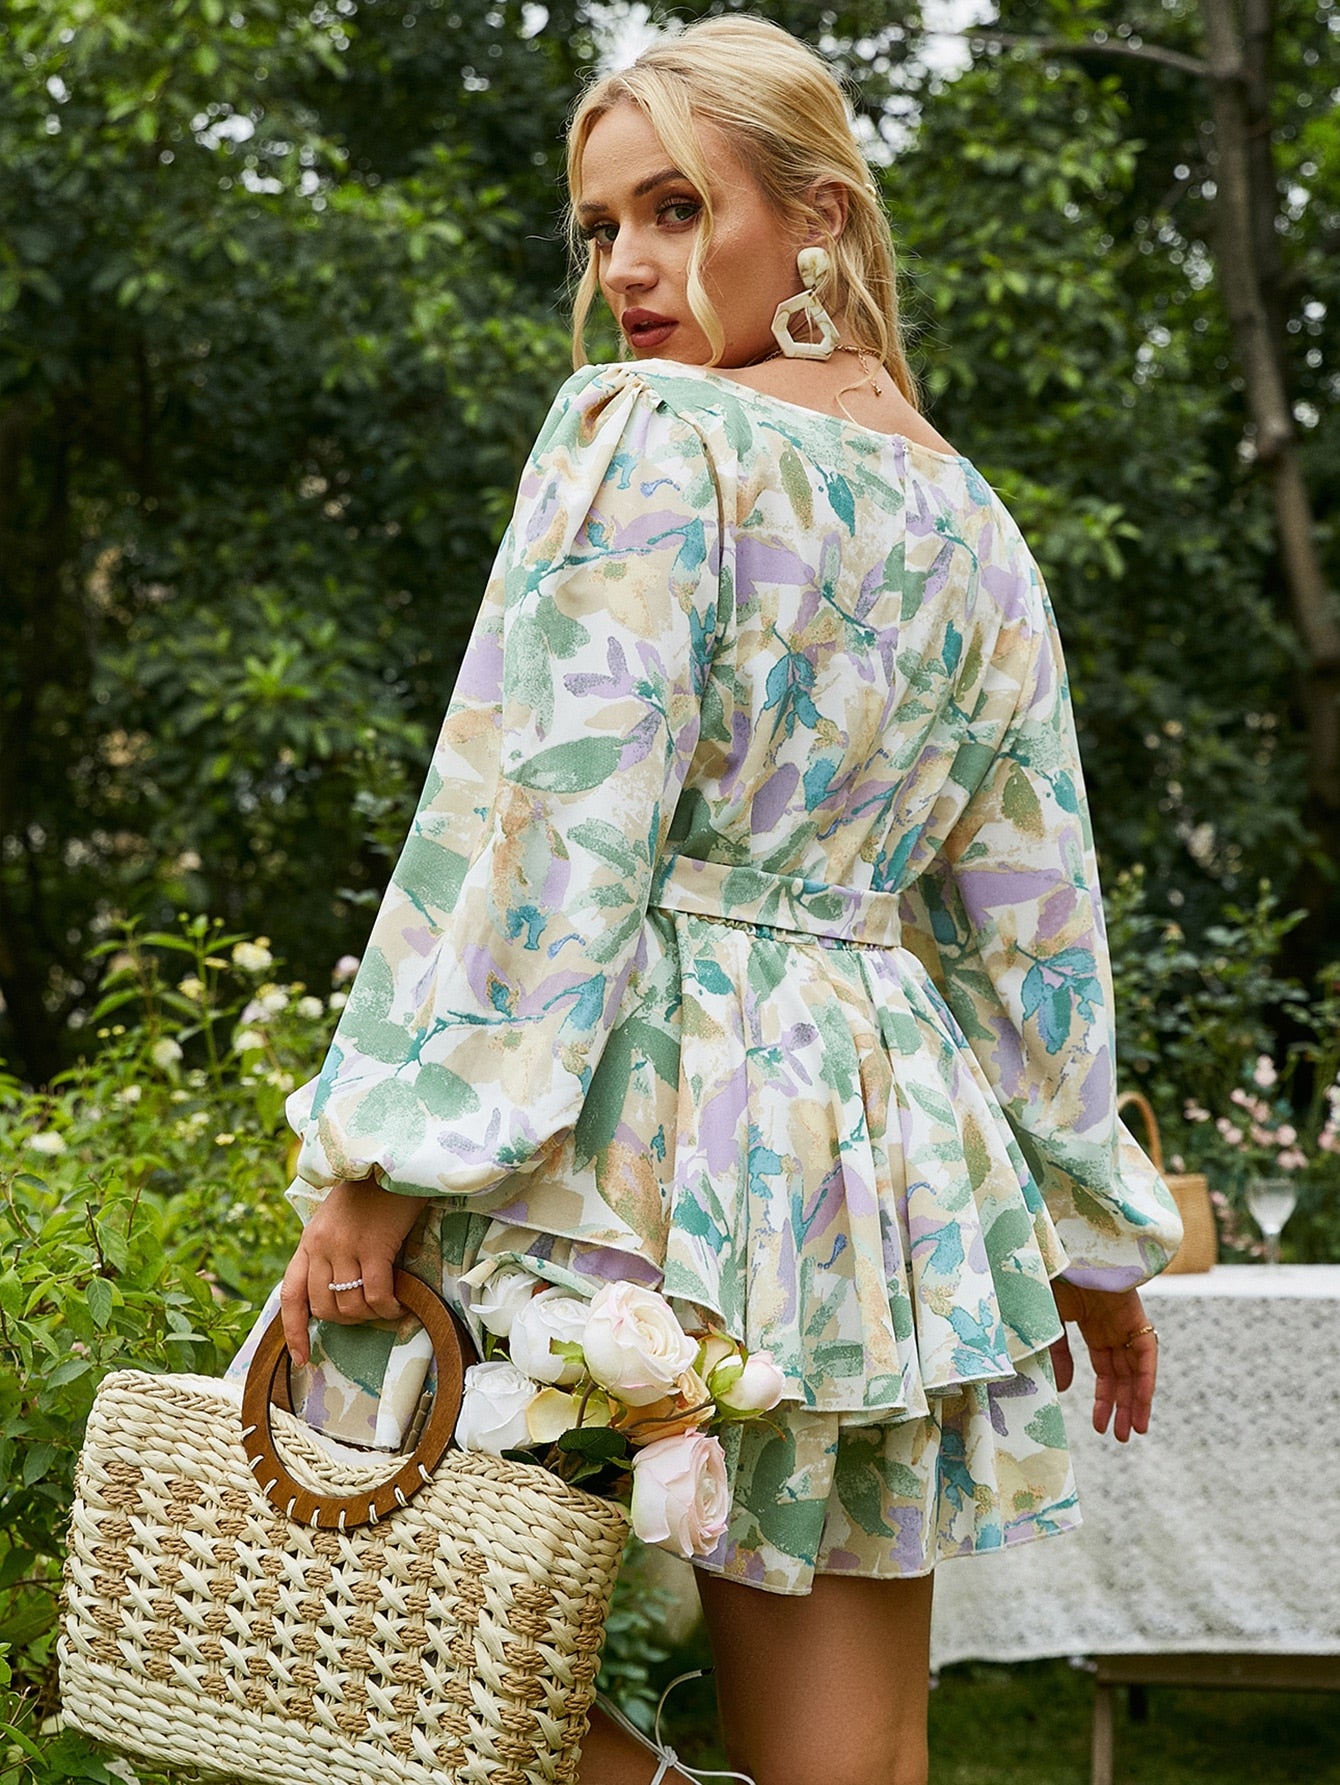 Sash Ruffles Print Lace Floral Print Jumpsuit